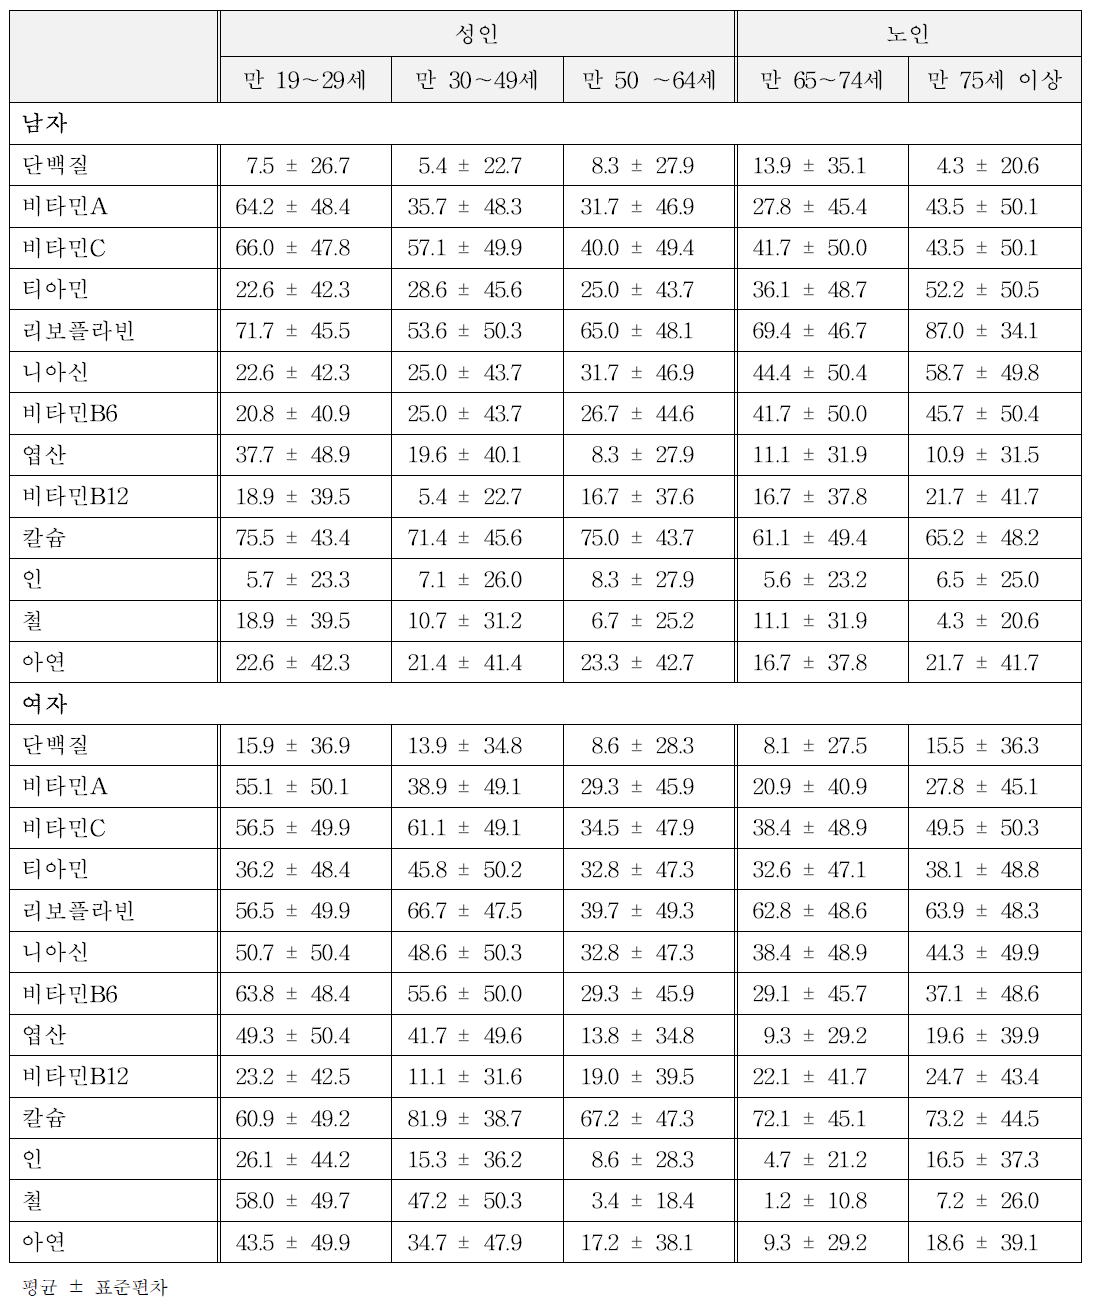 성인, 노인 양적 연구 조사대상자의 한국인 영양섭취기준(평균필요량) 미만 섭취자에 대한 비율